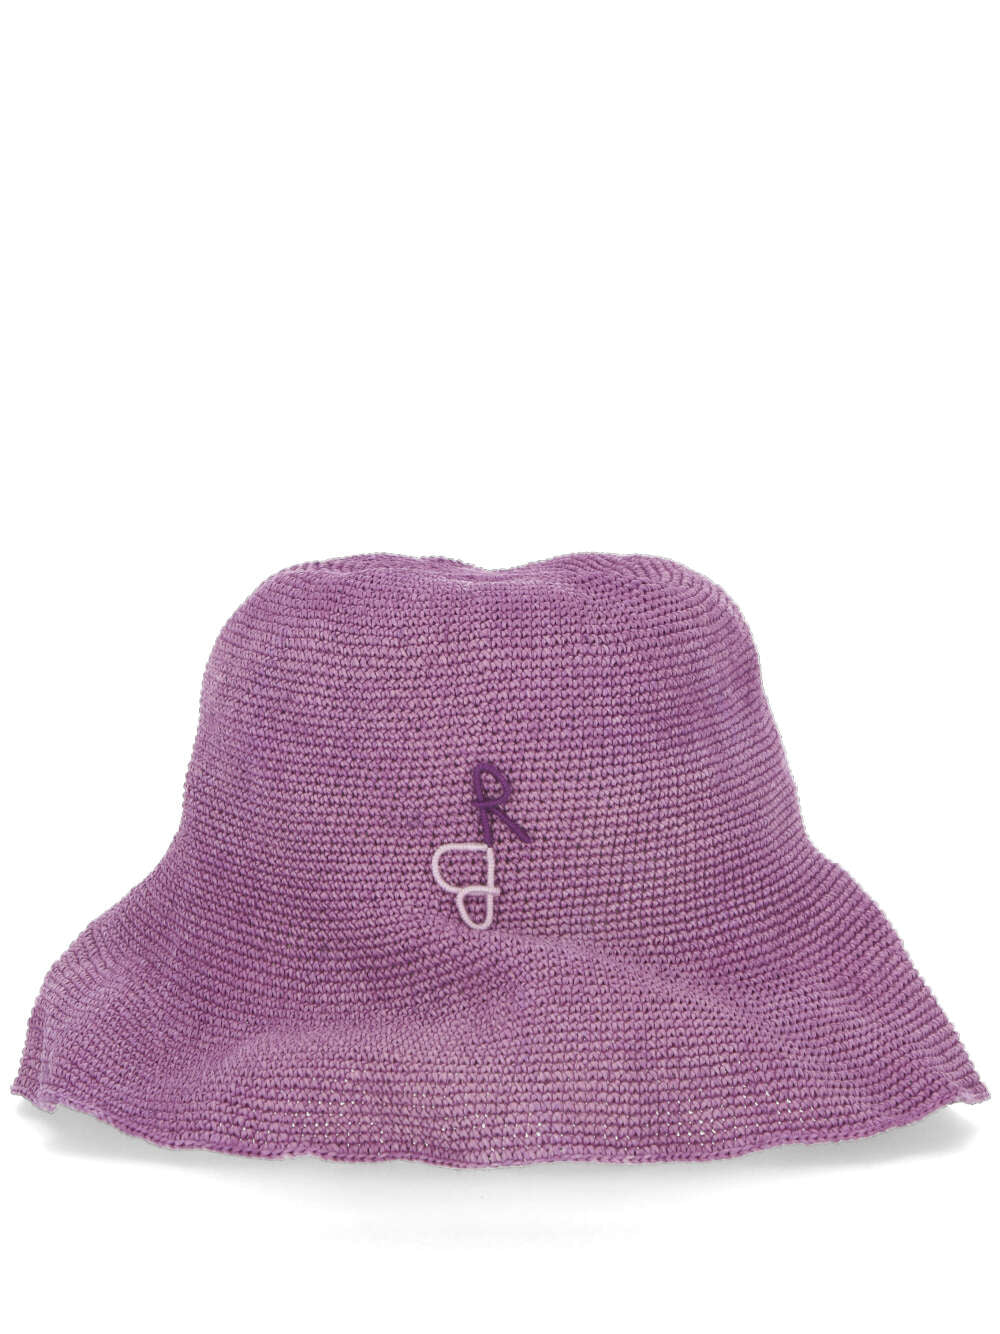 RUSLAN BAGINSKIY BCTSTRKNTY Woman Purple Hats - Zuklat